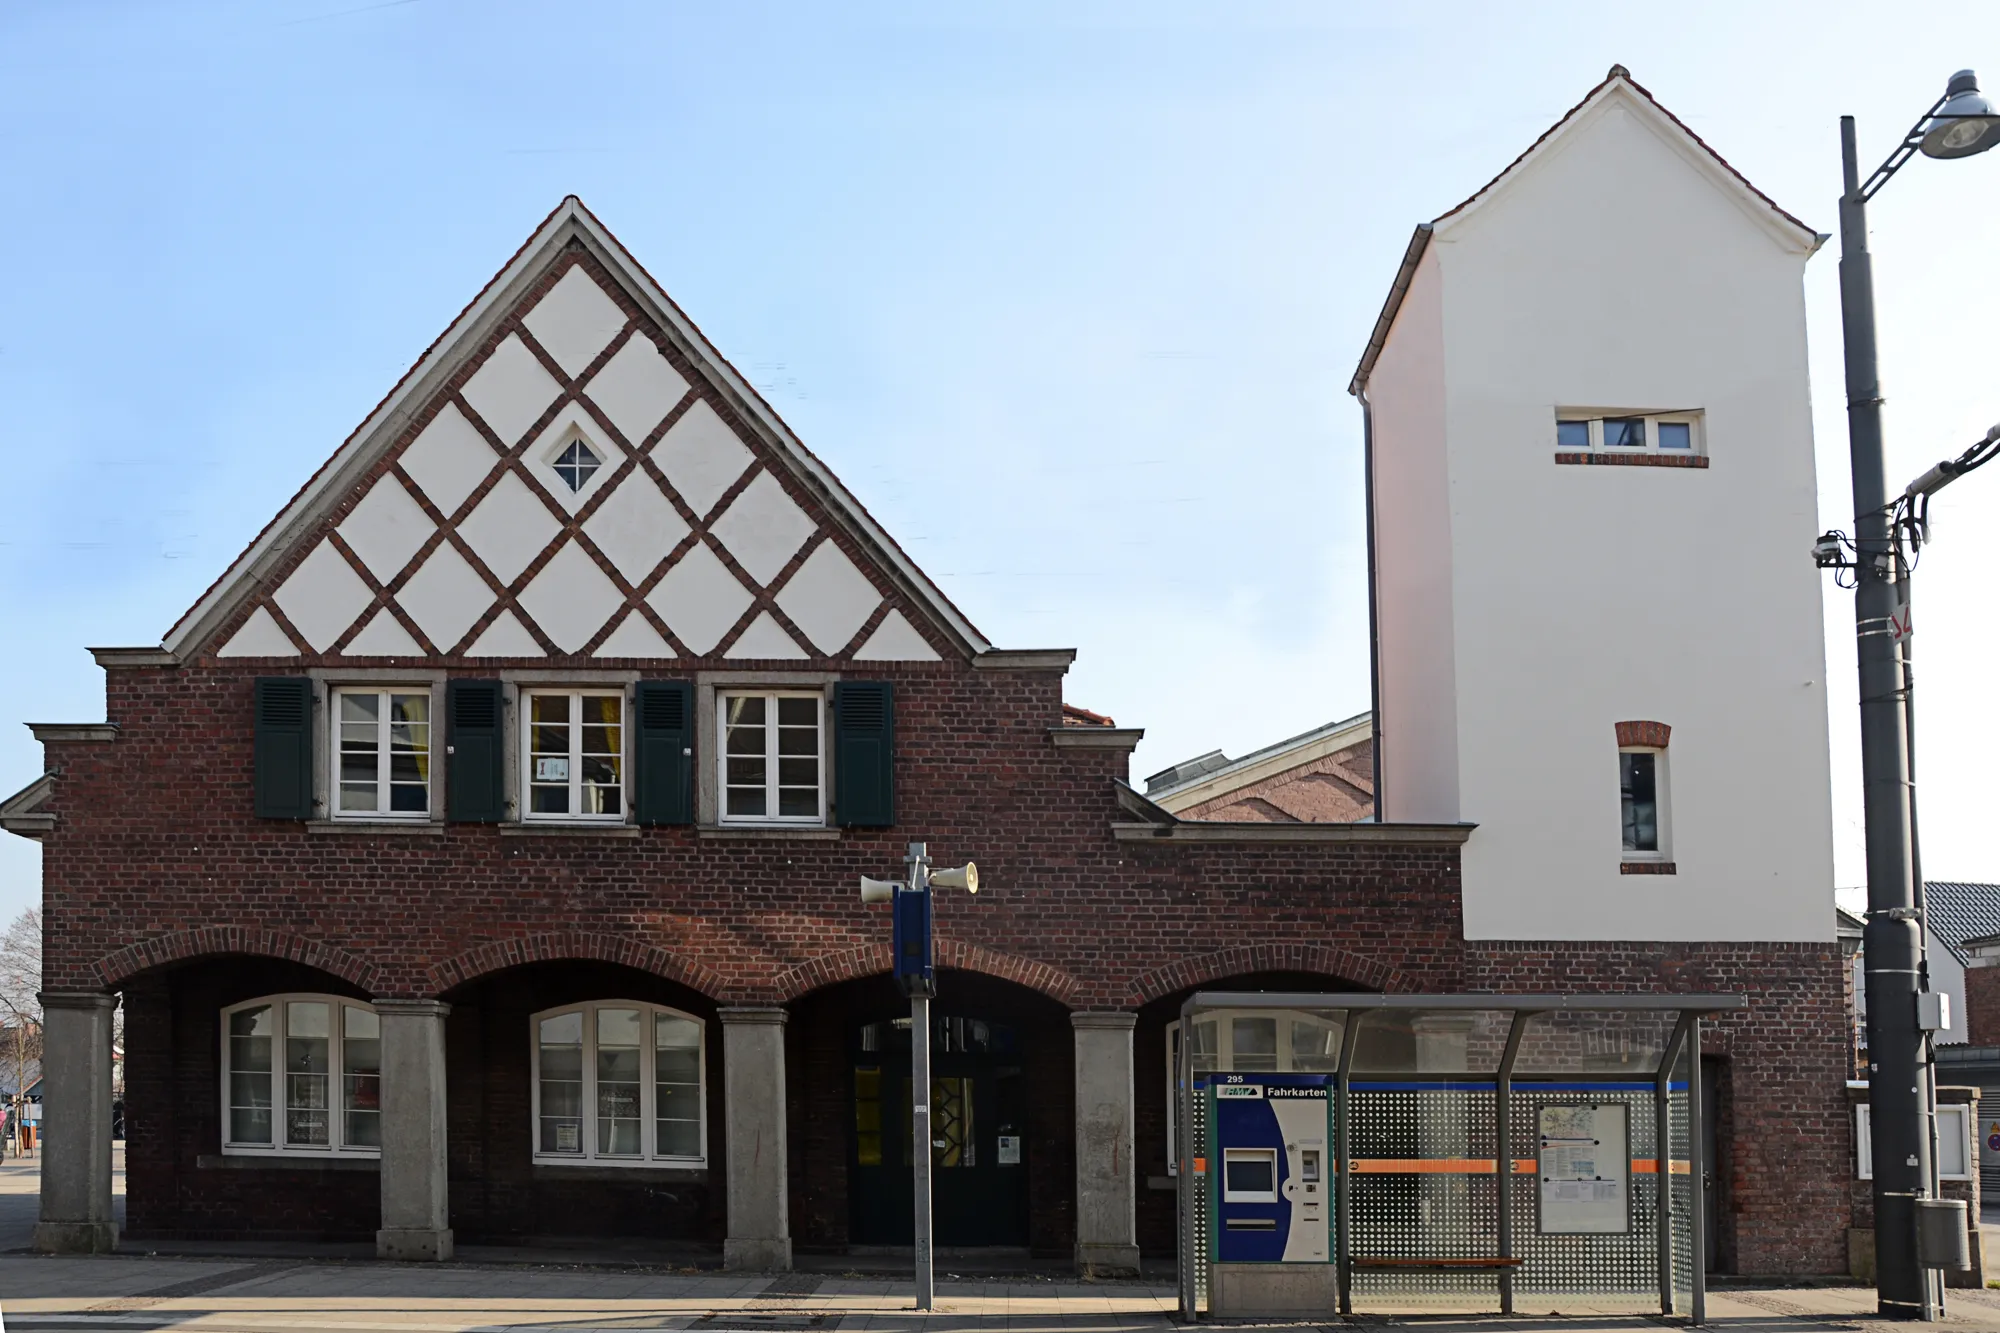 Photo showing: Denkmalgeschützte Gebäude in Darmstadt-Arheilgen, Frankfurter Landstraße 149
Details siehe:

https://de.wikipedia.org/wiki/Stra%C3%9Fenbahndepot_Arheilgen